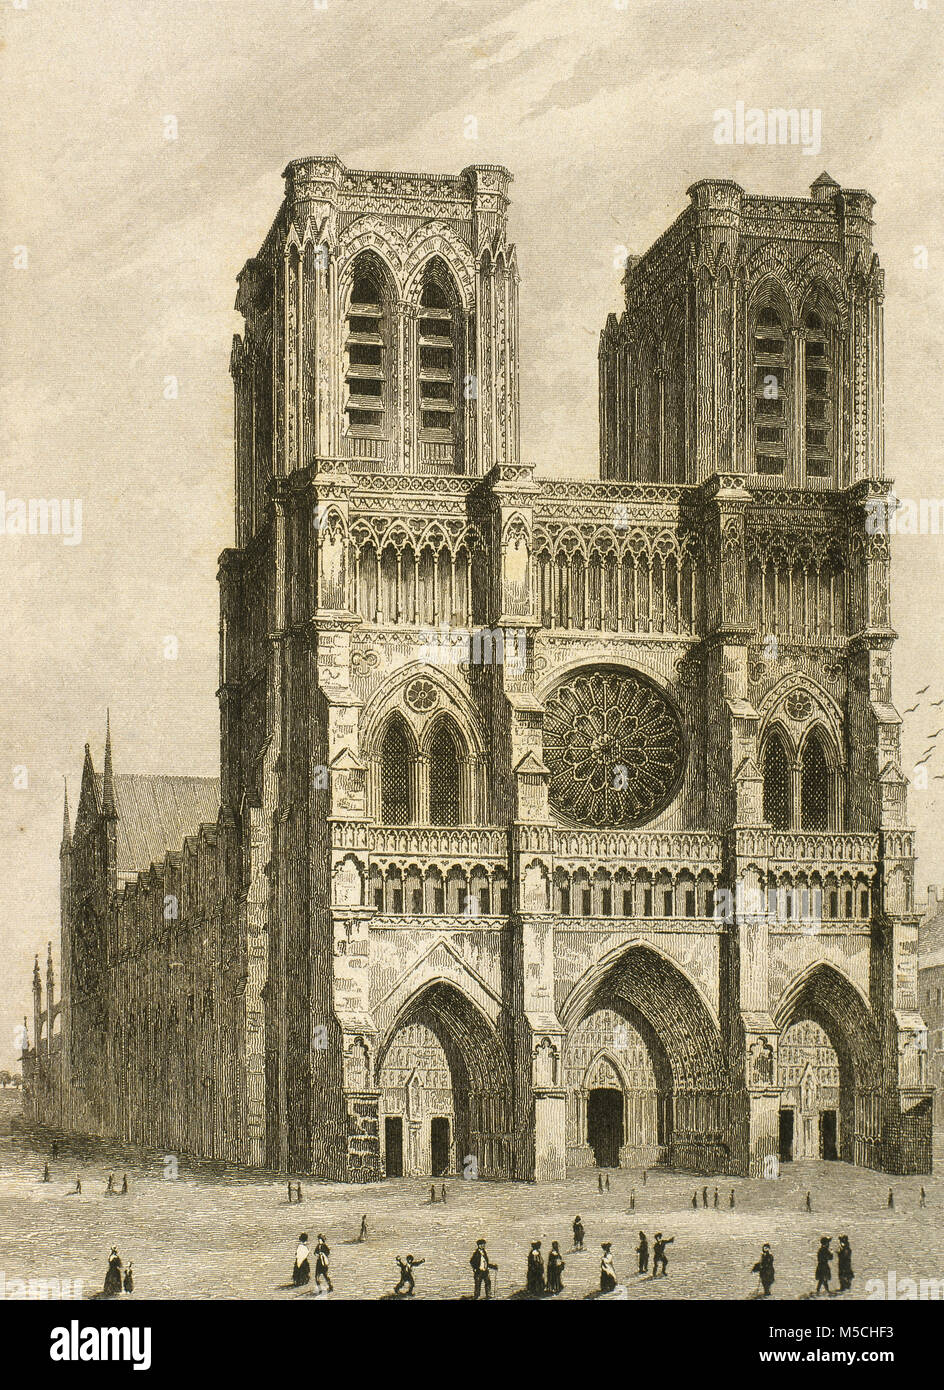 Cathédrale Notre-Dame, Paris, France. Sa construction a commencé en 1163 et a été achevé en 1345. Dessin par Gaucherel. Gravure, 1841. Universal-France 'Panorama'. Banque D'Images